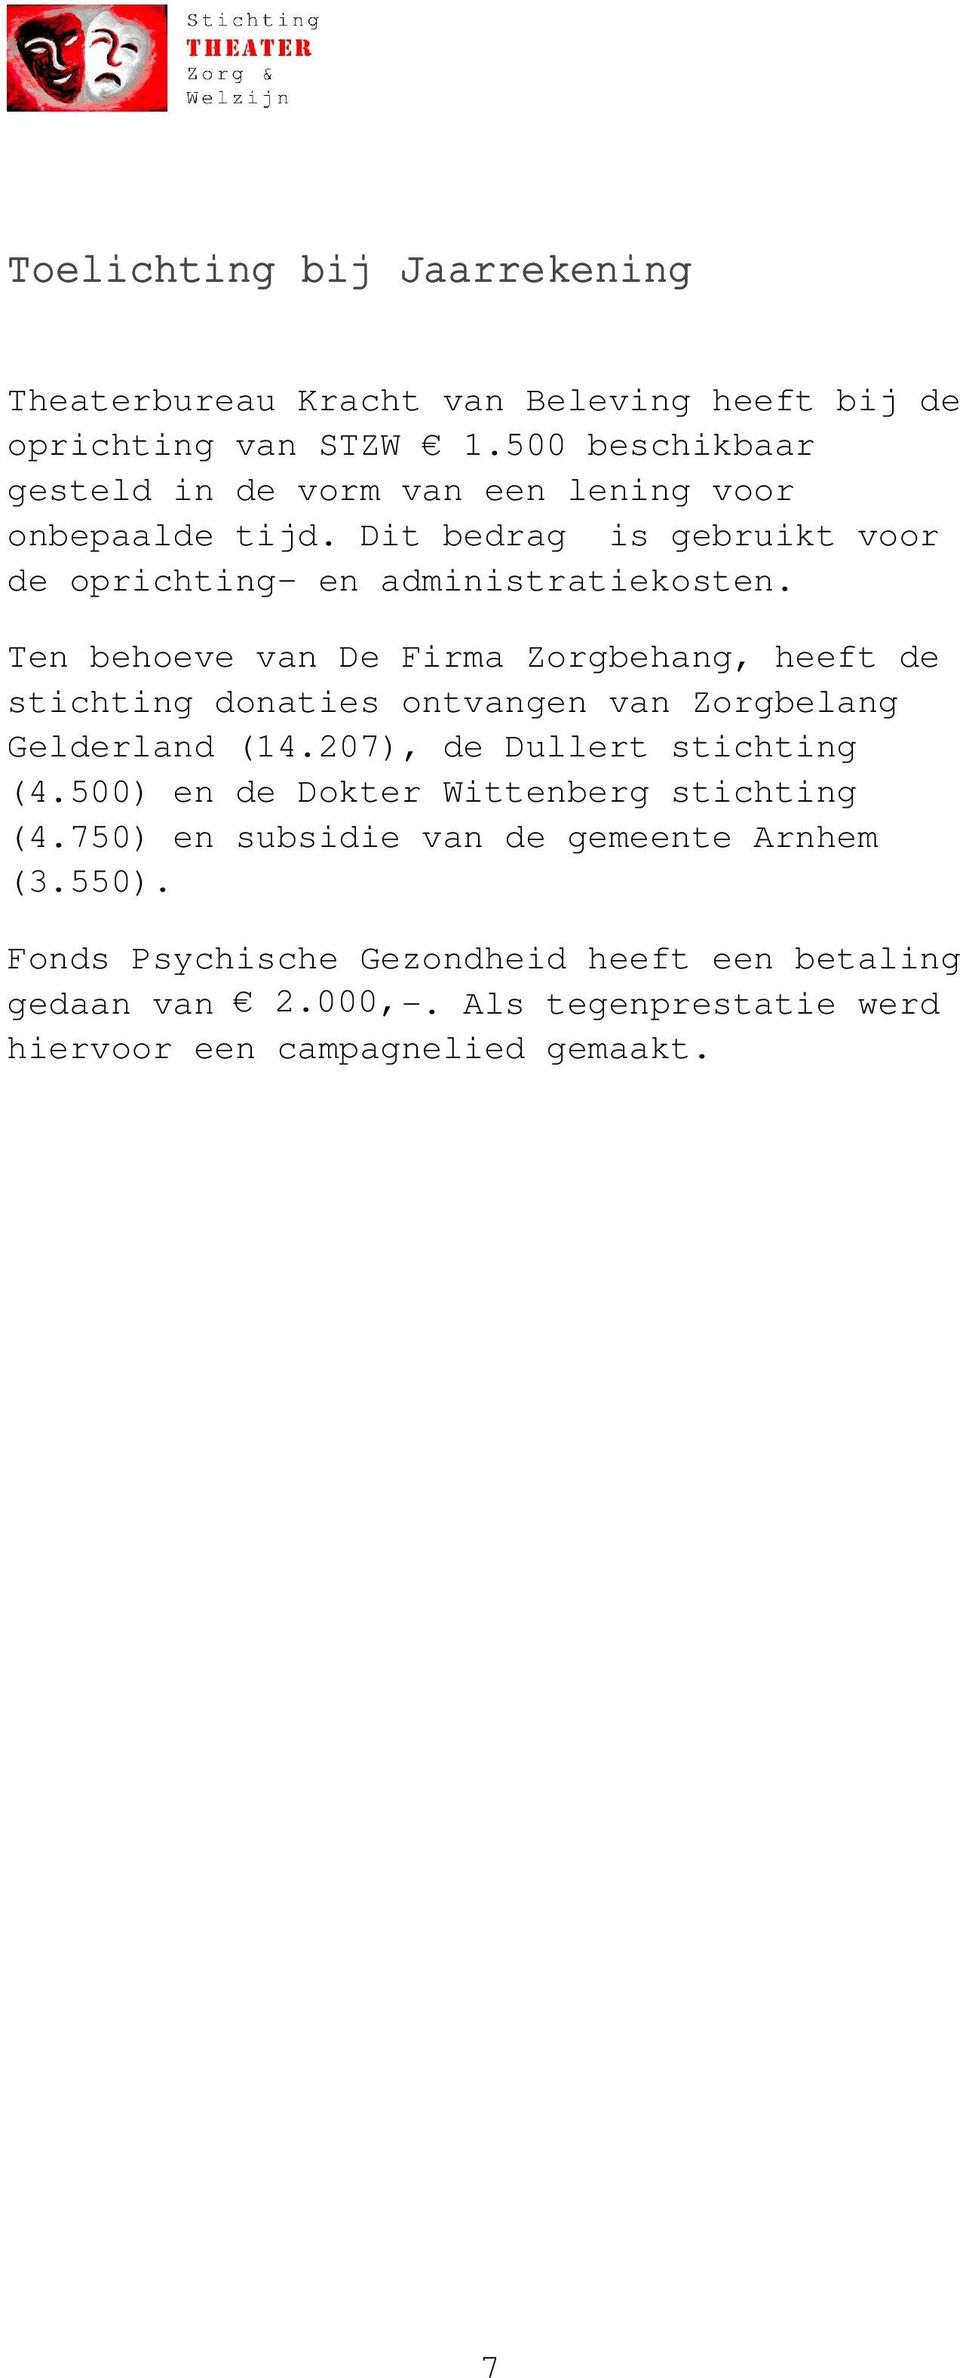 Ten behoeve van De Firma Zorgbehang, heeft de stichting donaties ontvangen van Zorgbelang Gelderland (14.207), de Dullert stichting (4.